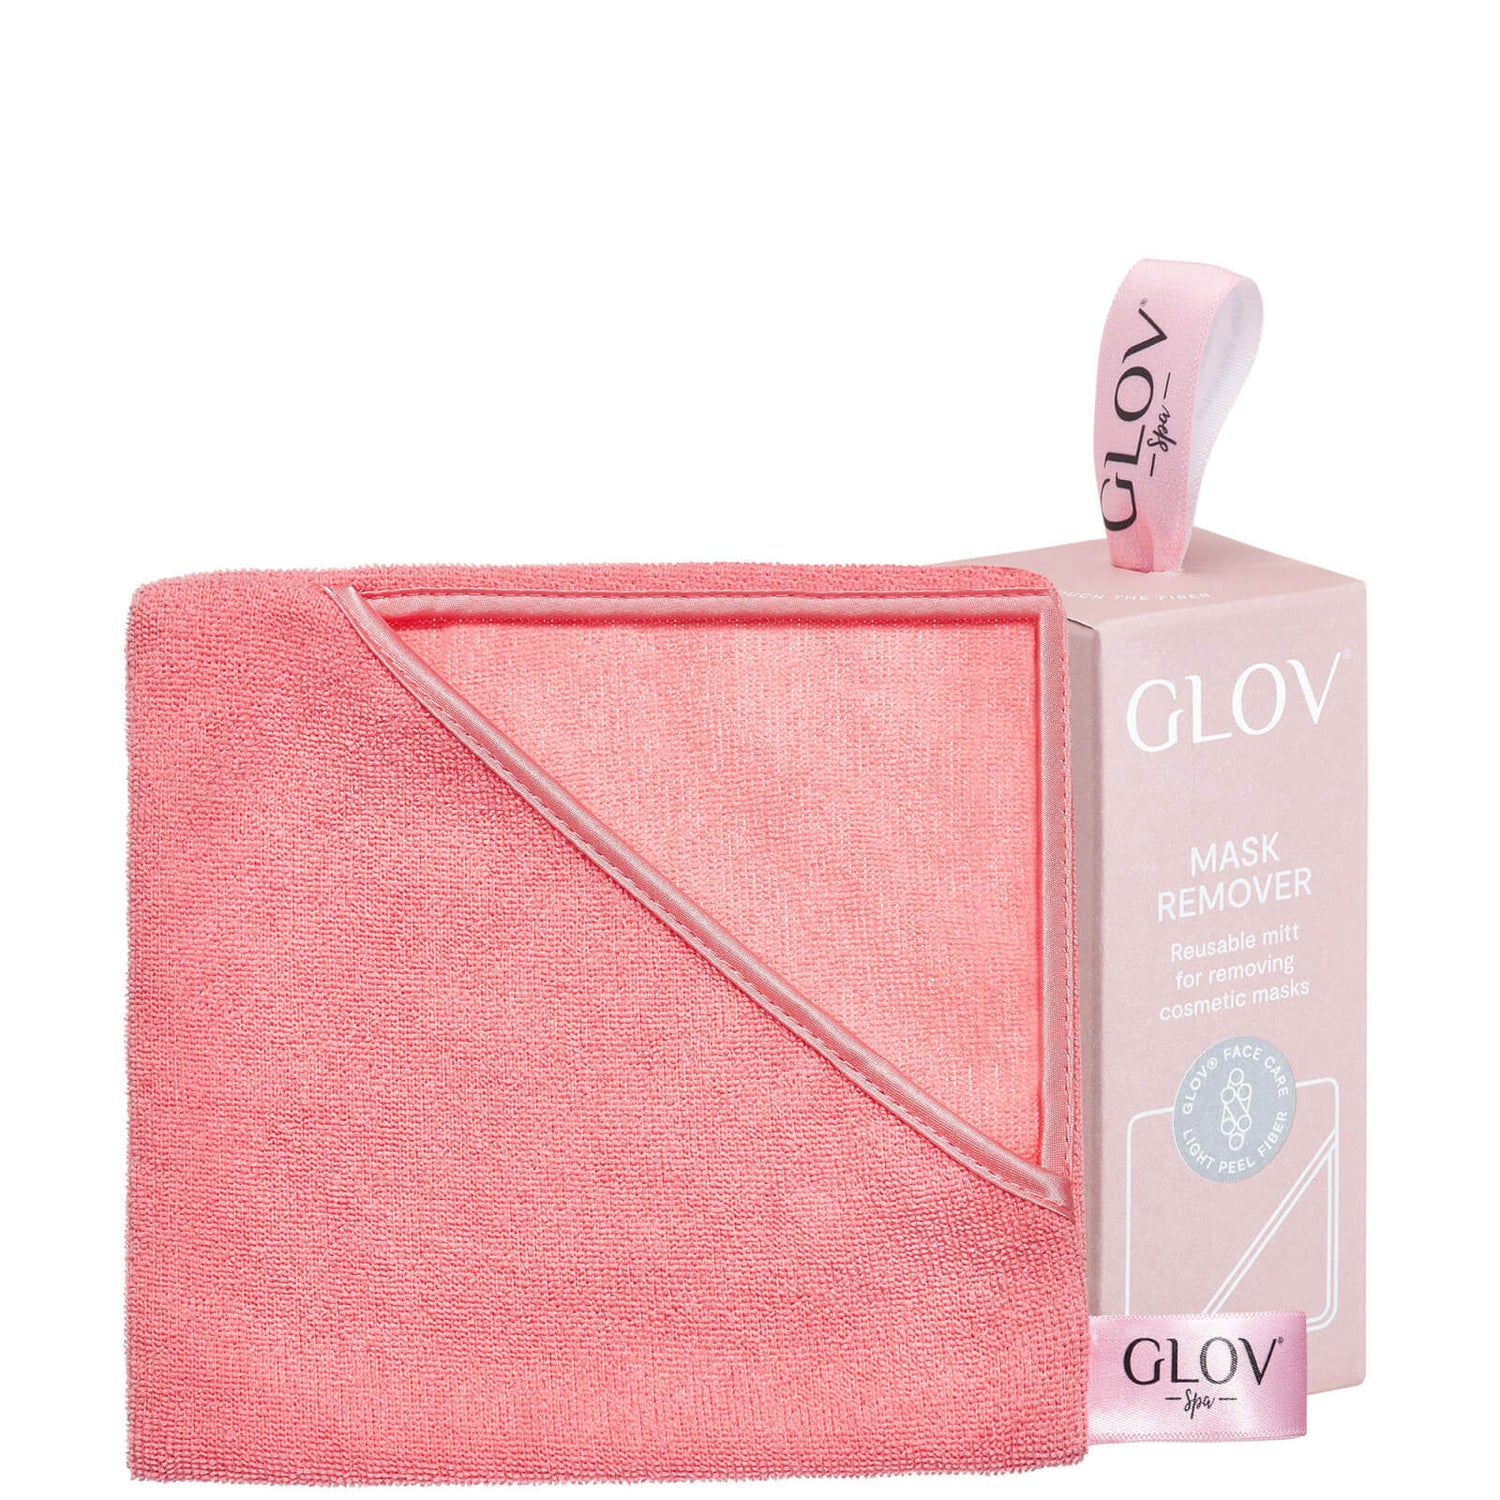 GLOV® 面膜卸除手套 | 粉色